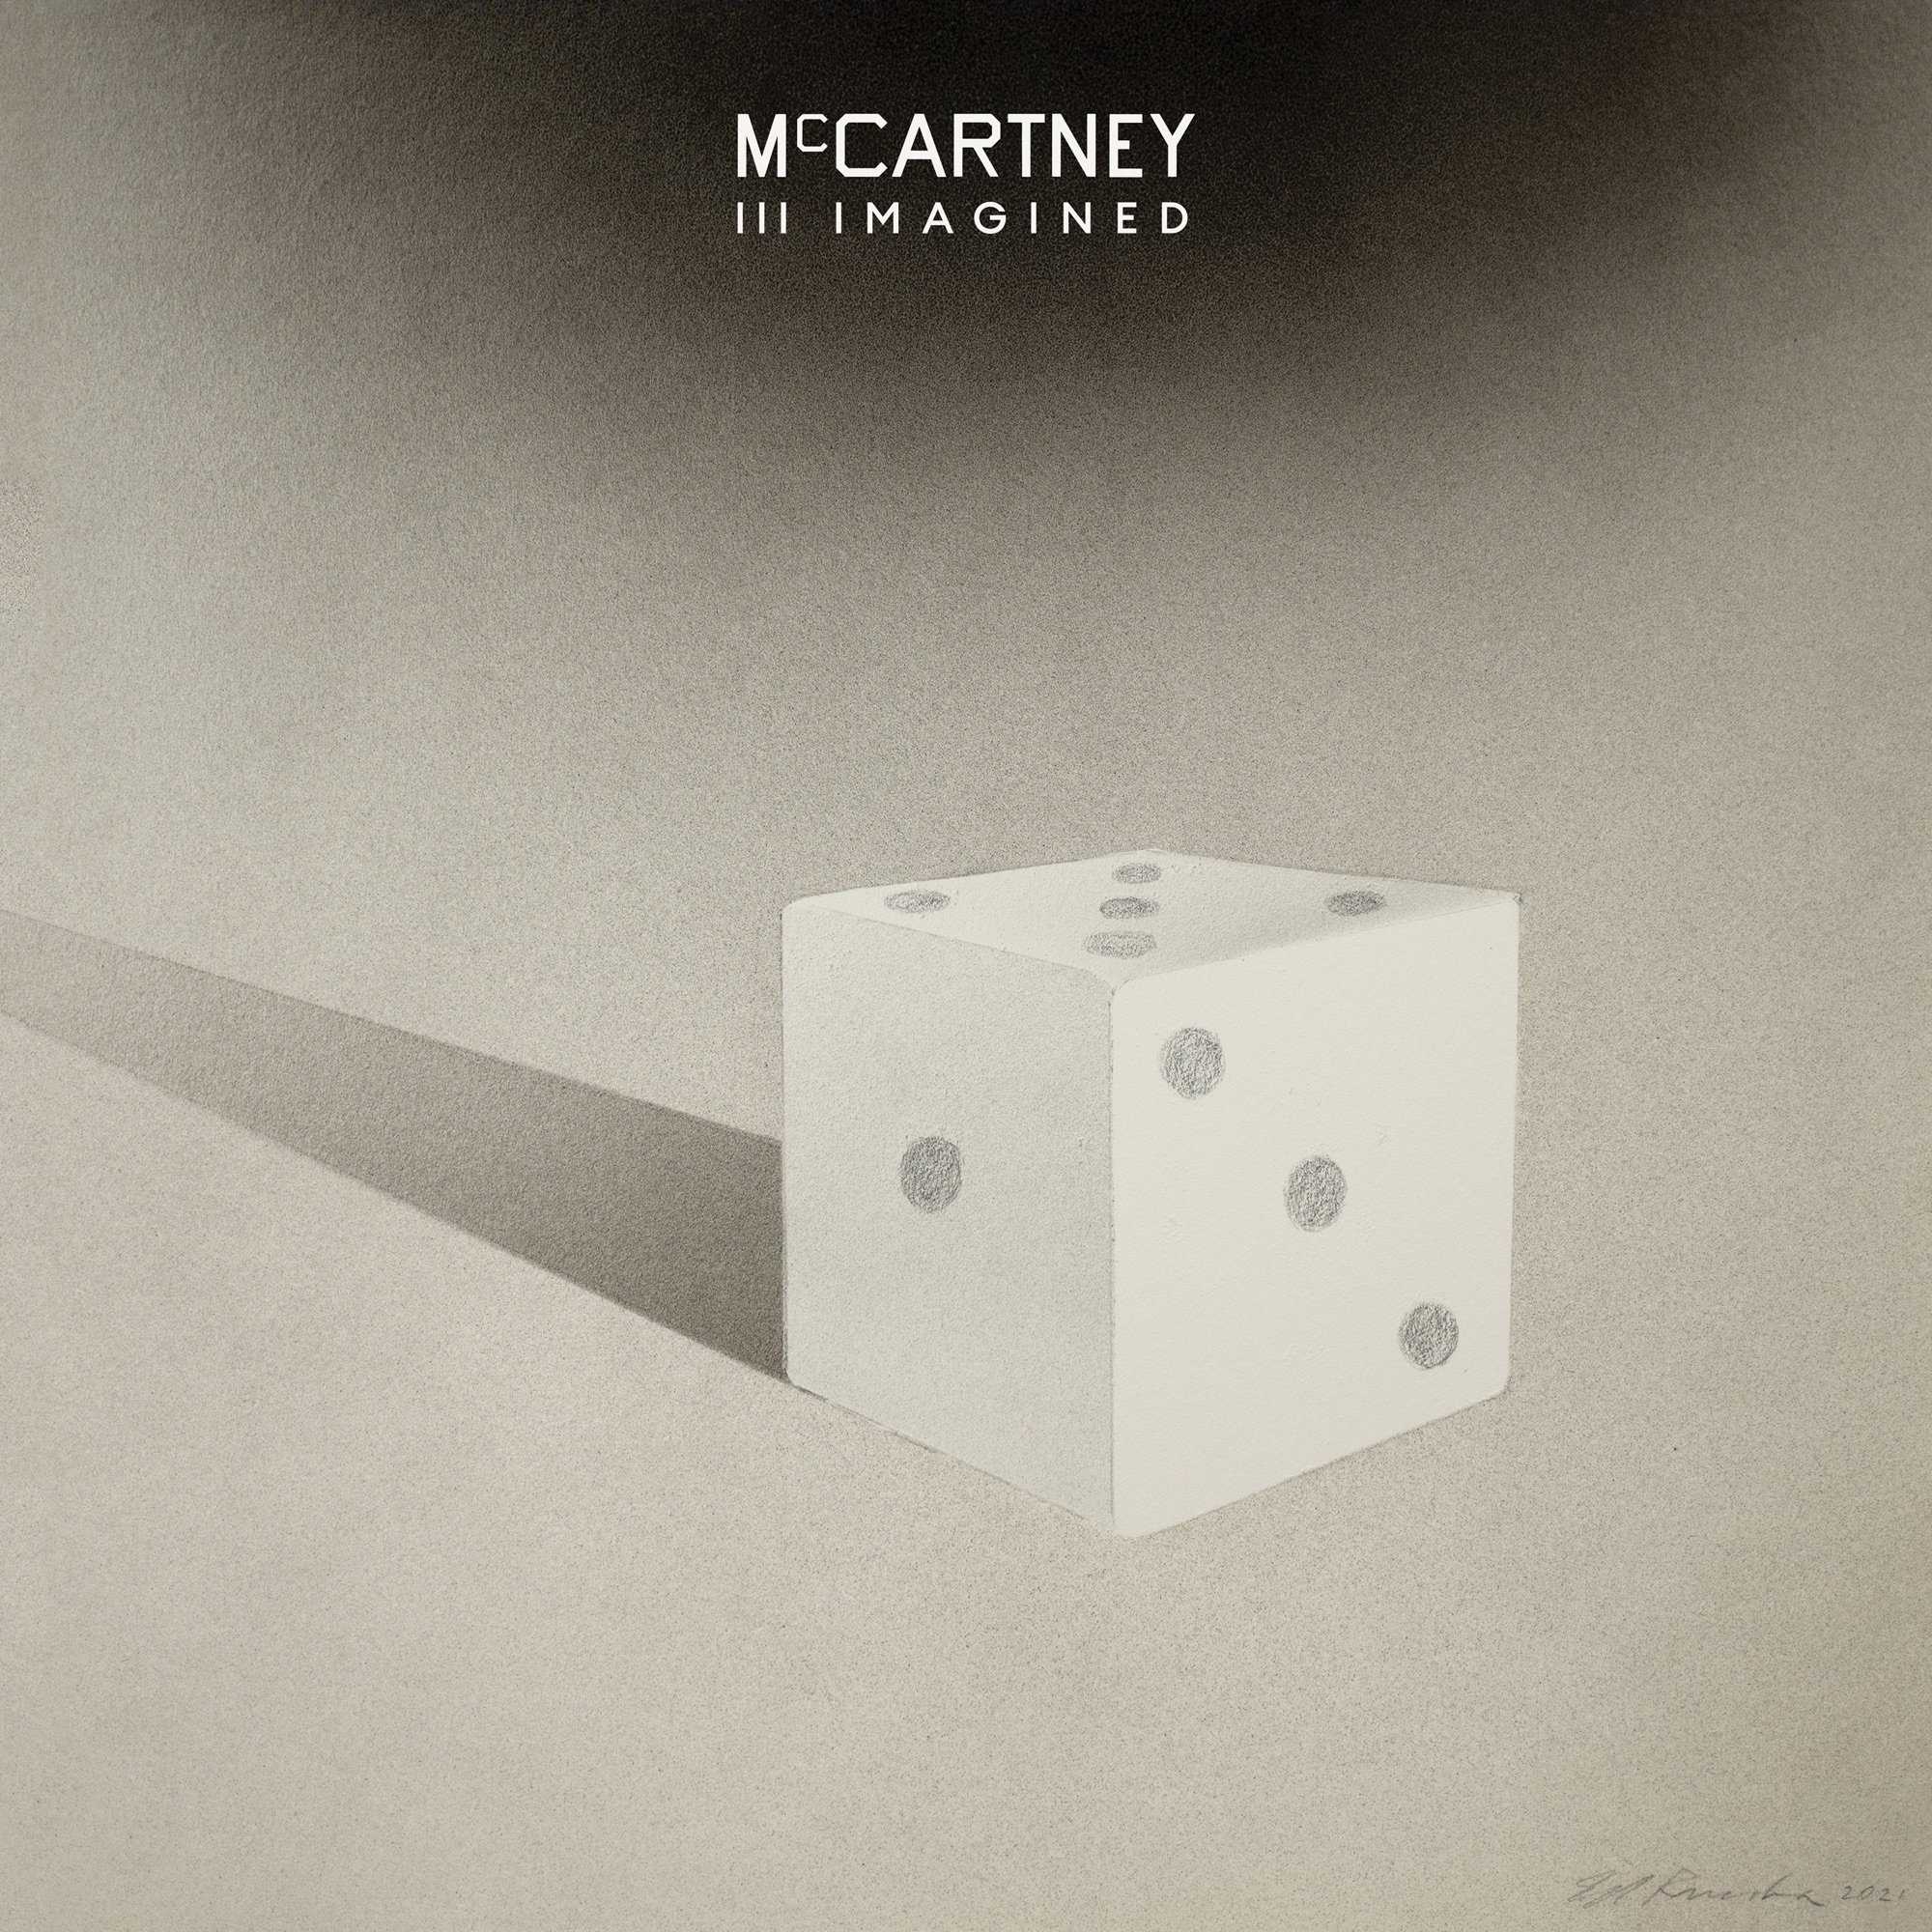 Paul McCartney-McCartney III Imagined-24-48-WEB-FLAC-2020-OBZEN Download